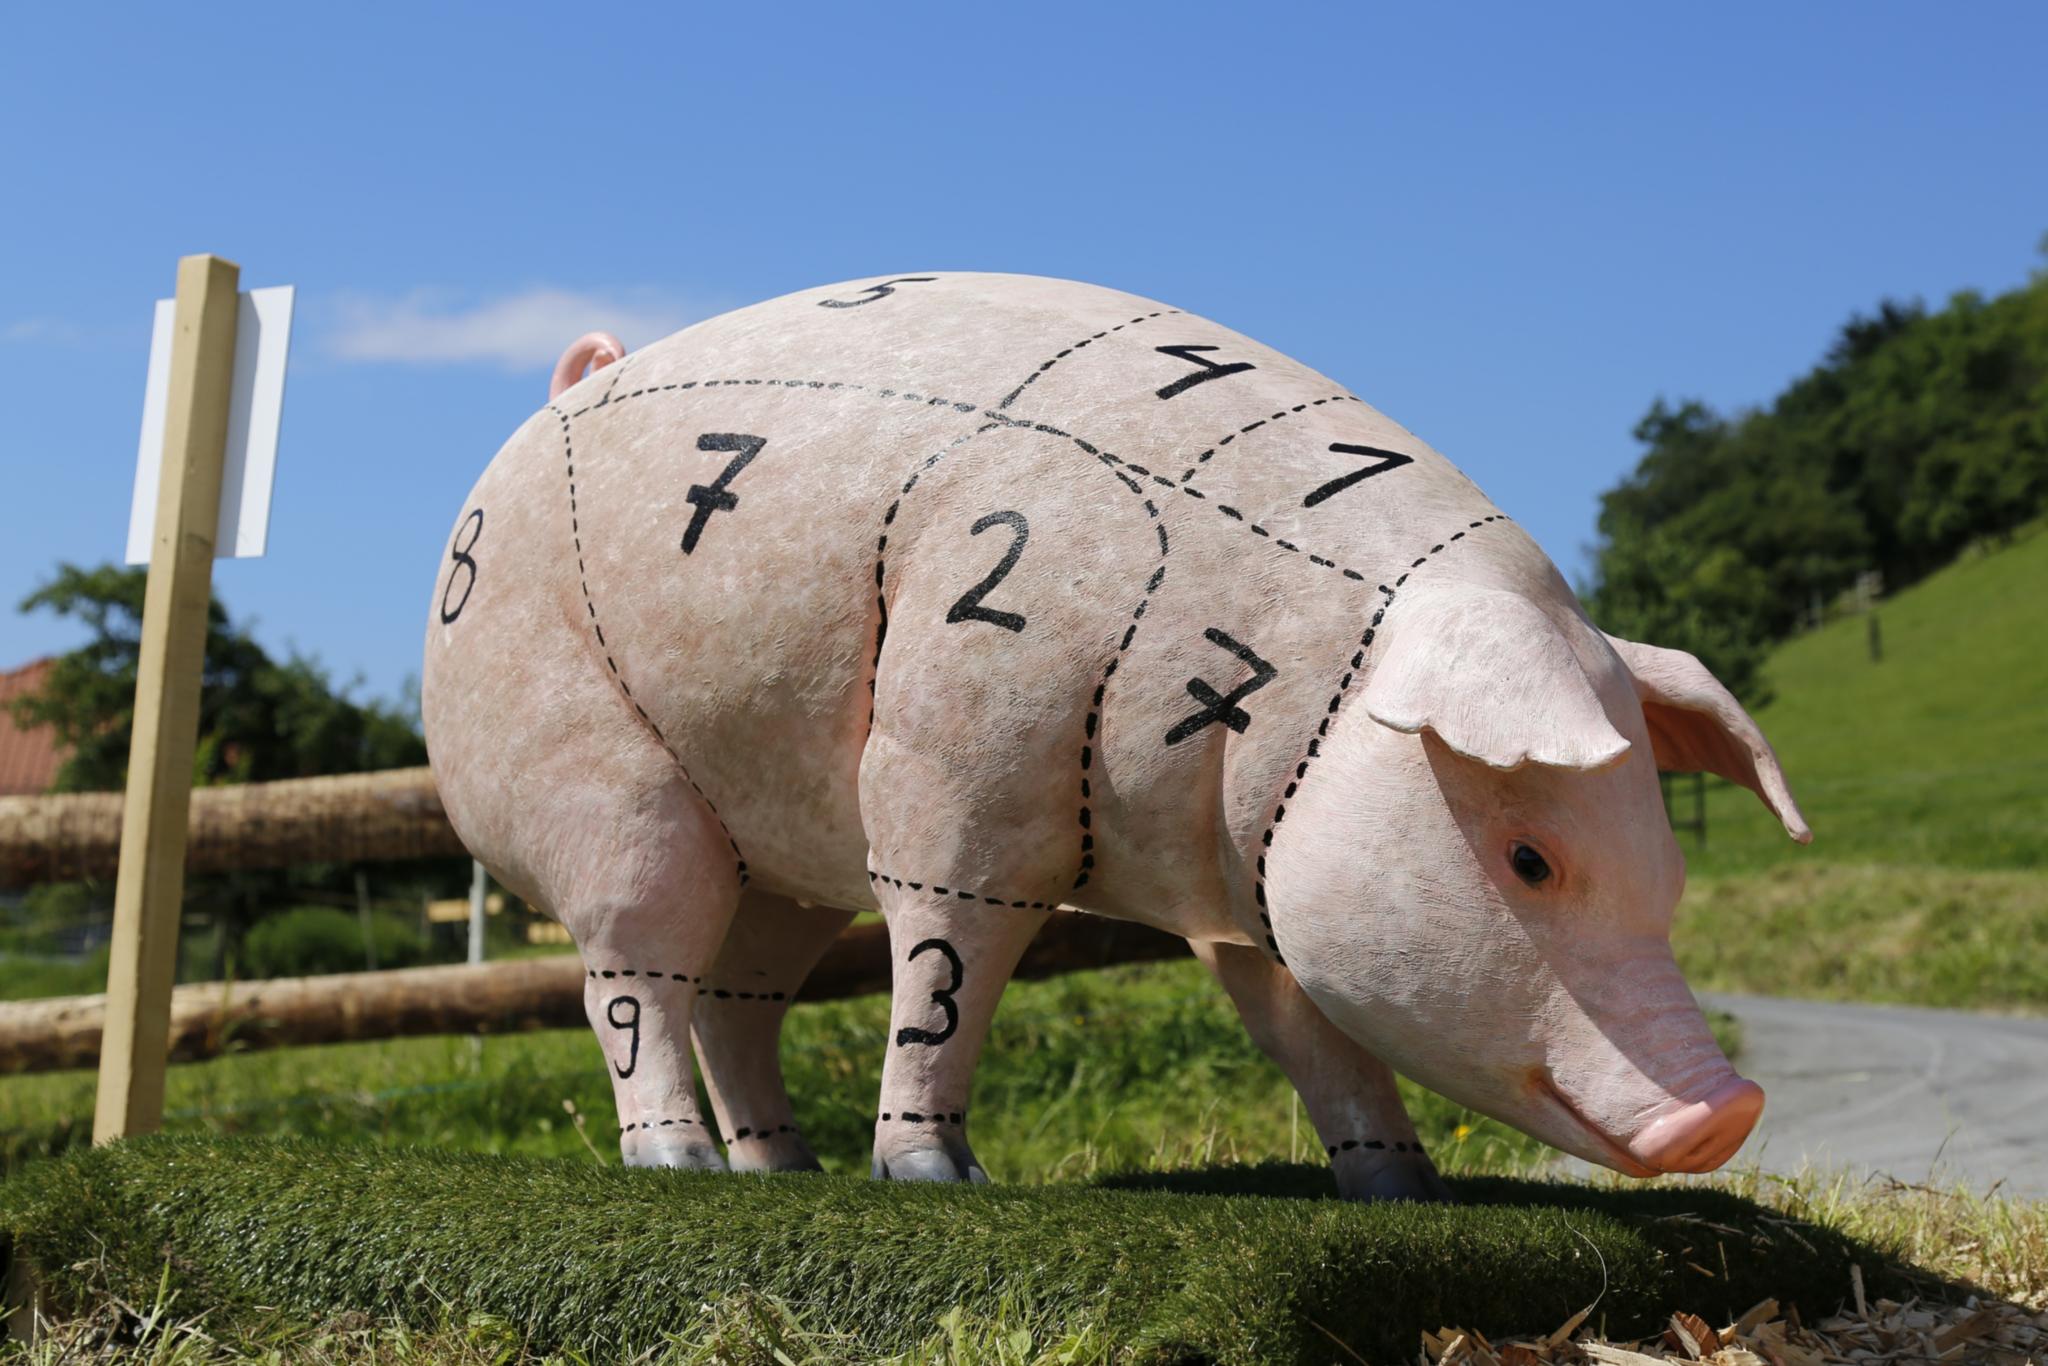 Schwein haben<br>Schöpfungsbewahrung im Bereich der Tierhaltung, Fleischproduktion und -vermarktung